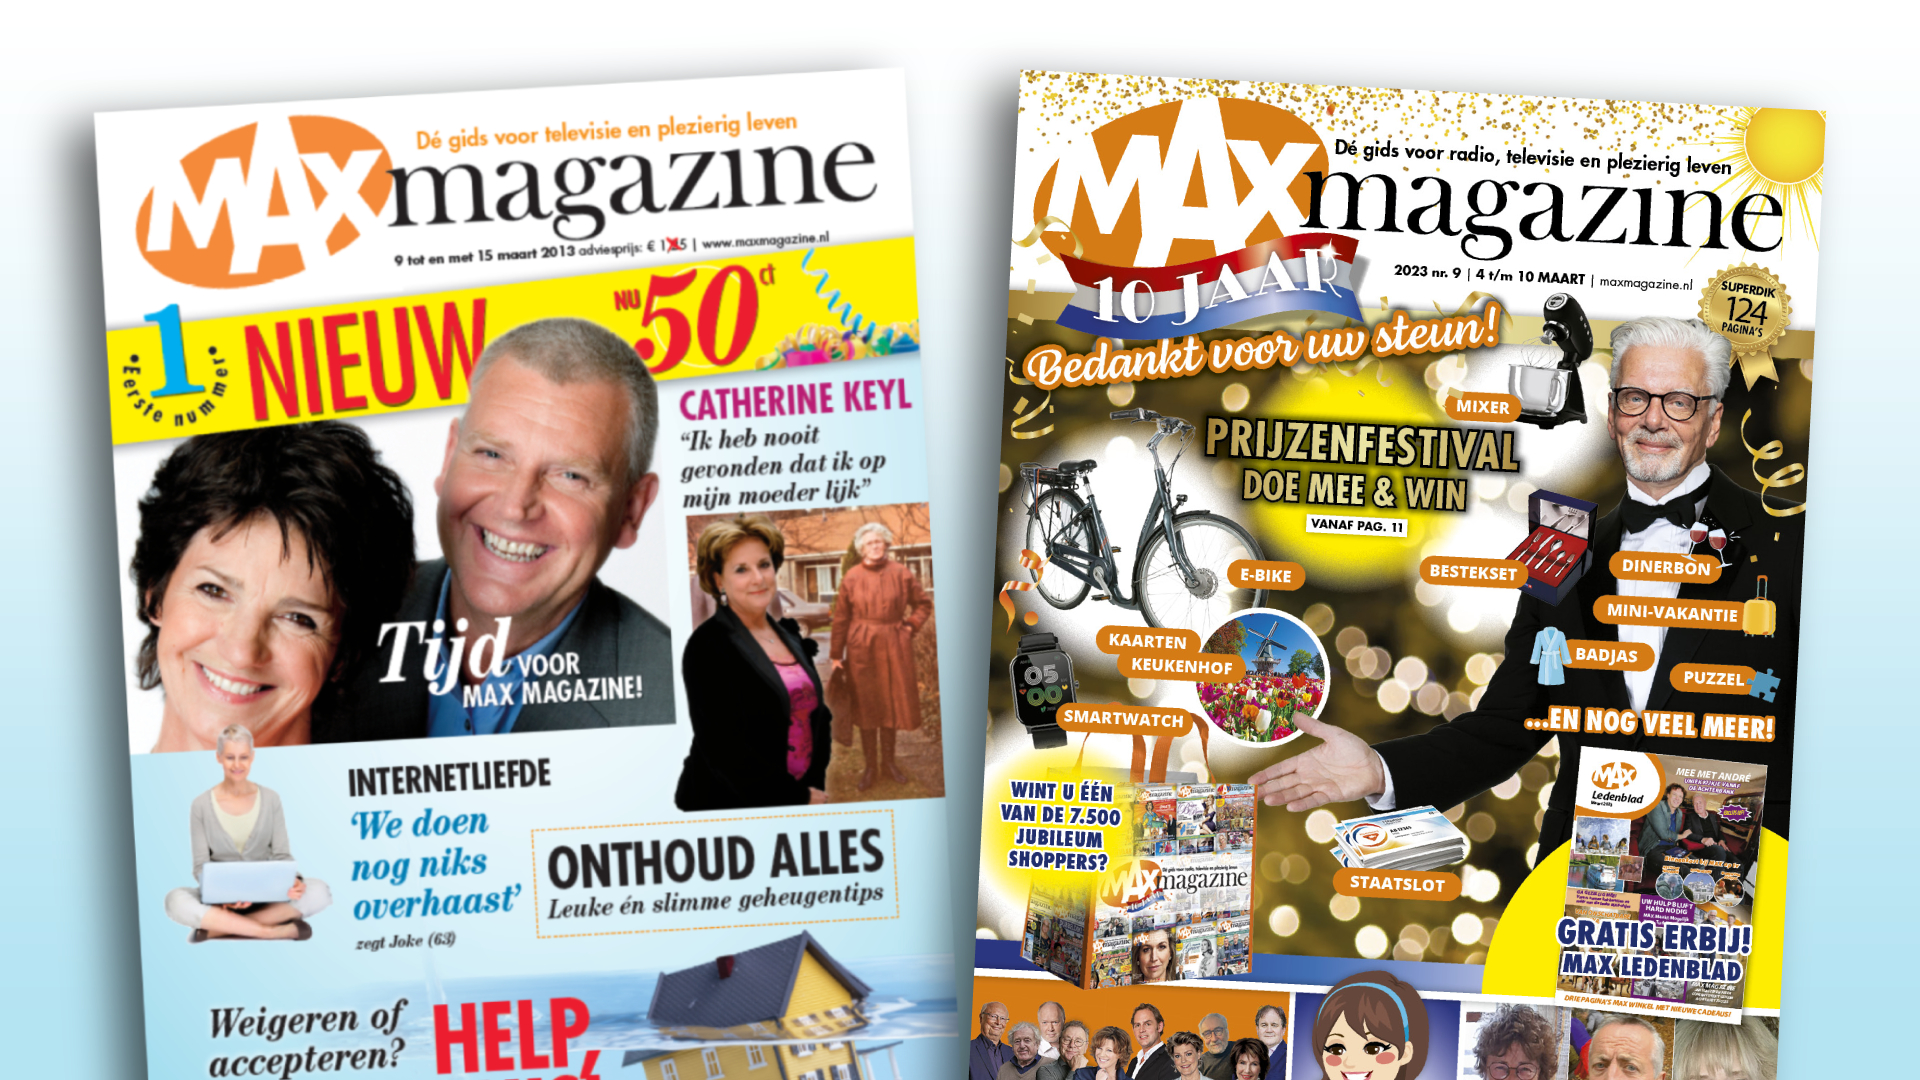 De viering van 10-jarig bestaan MAX Magazine